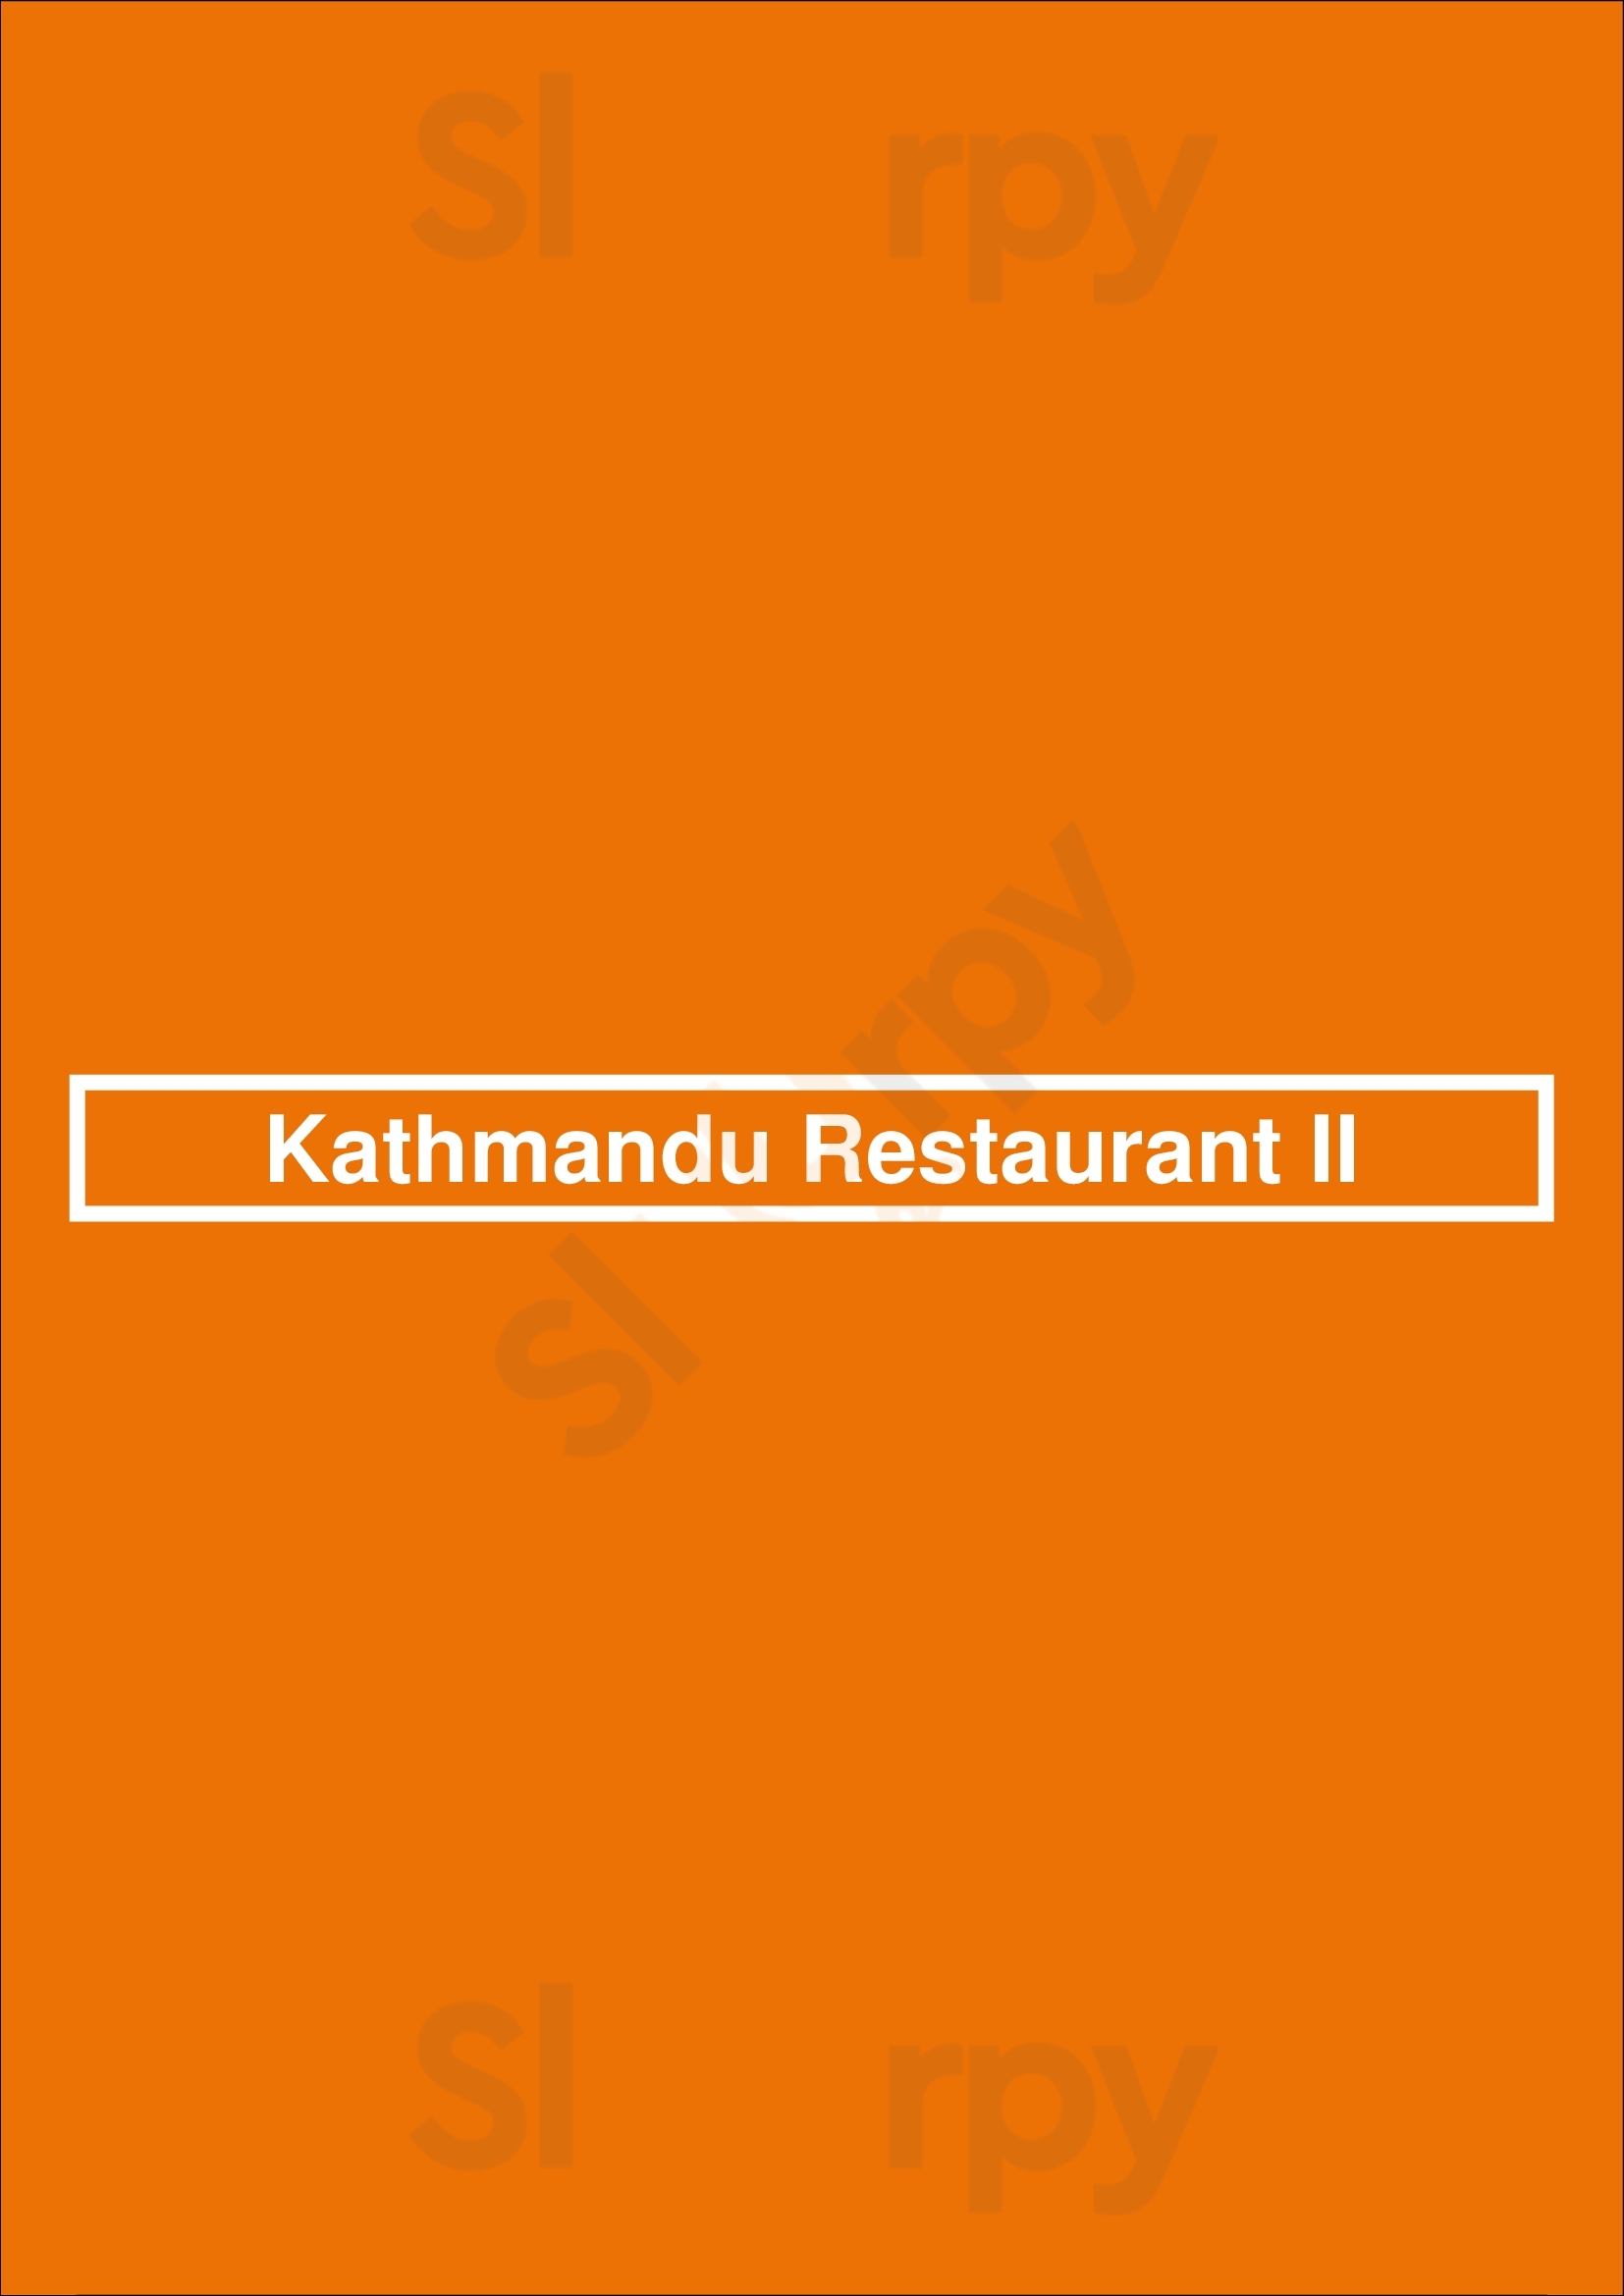 Kathmandu Restaurant Ii Boulder Menu - 1